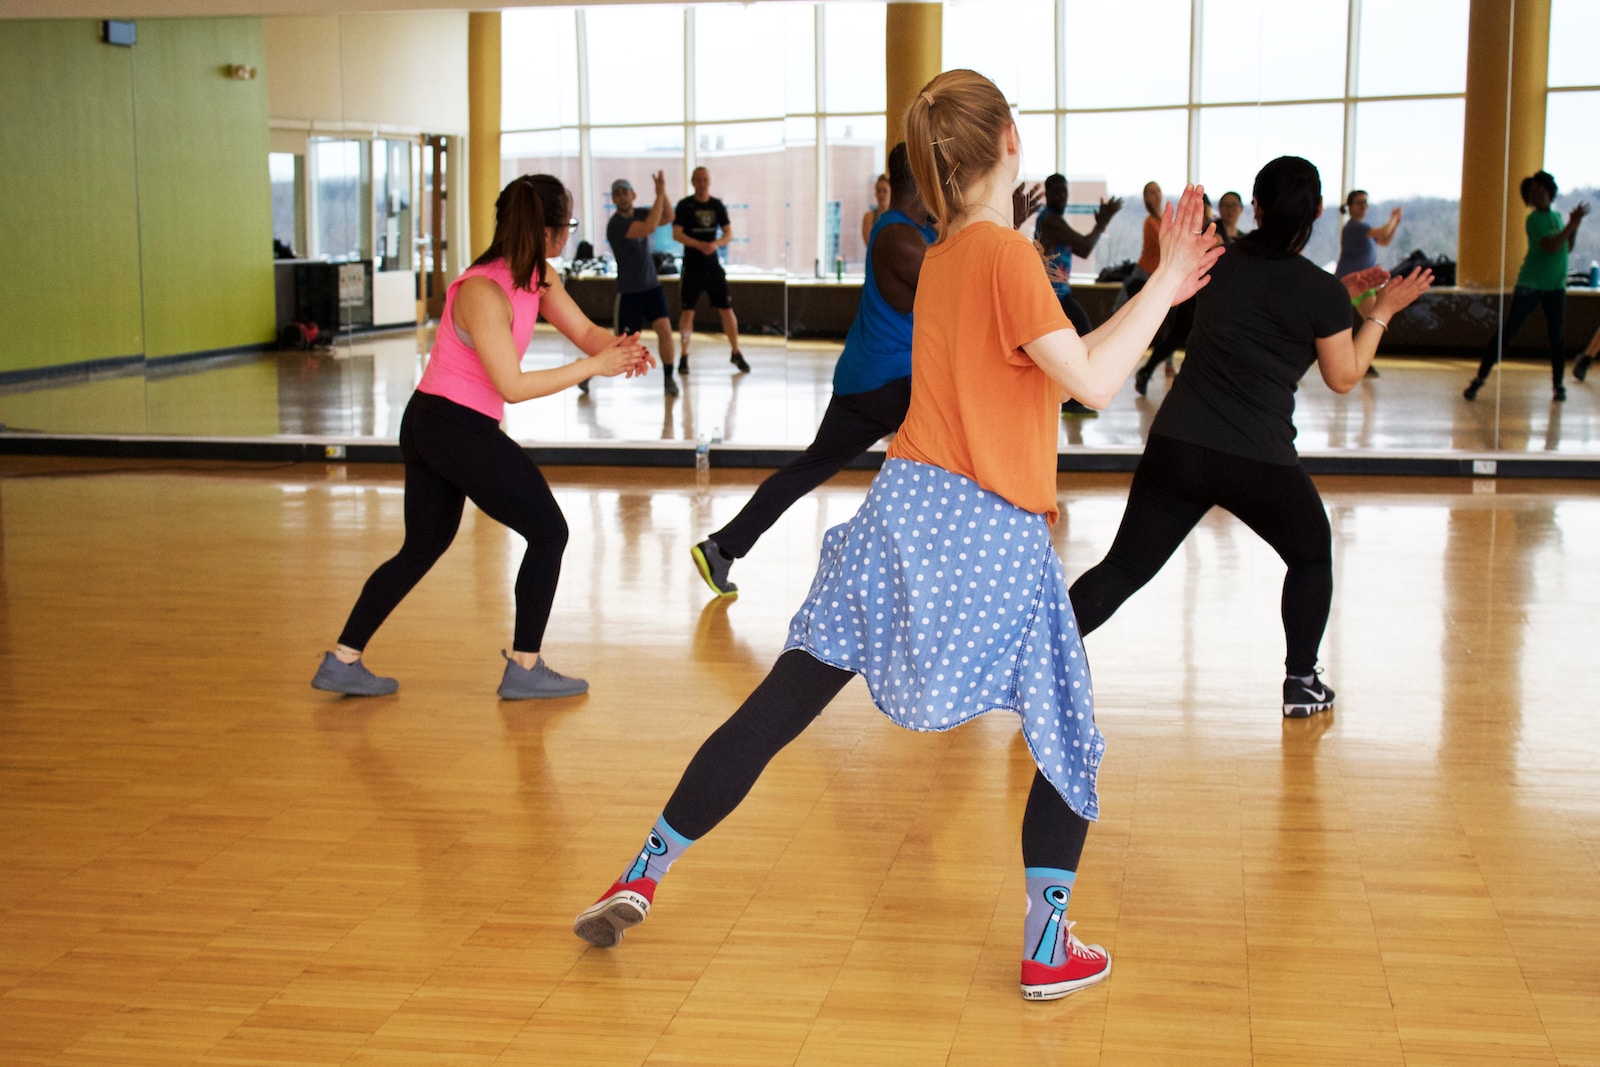 Jak tańczyć taniec towarzyski jako osoba niepełnosprawna fizycznie?